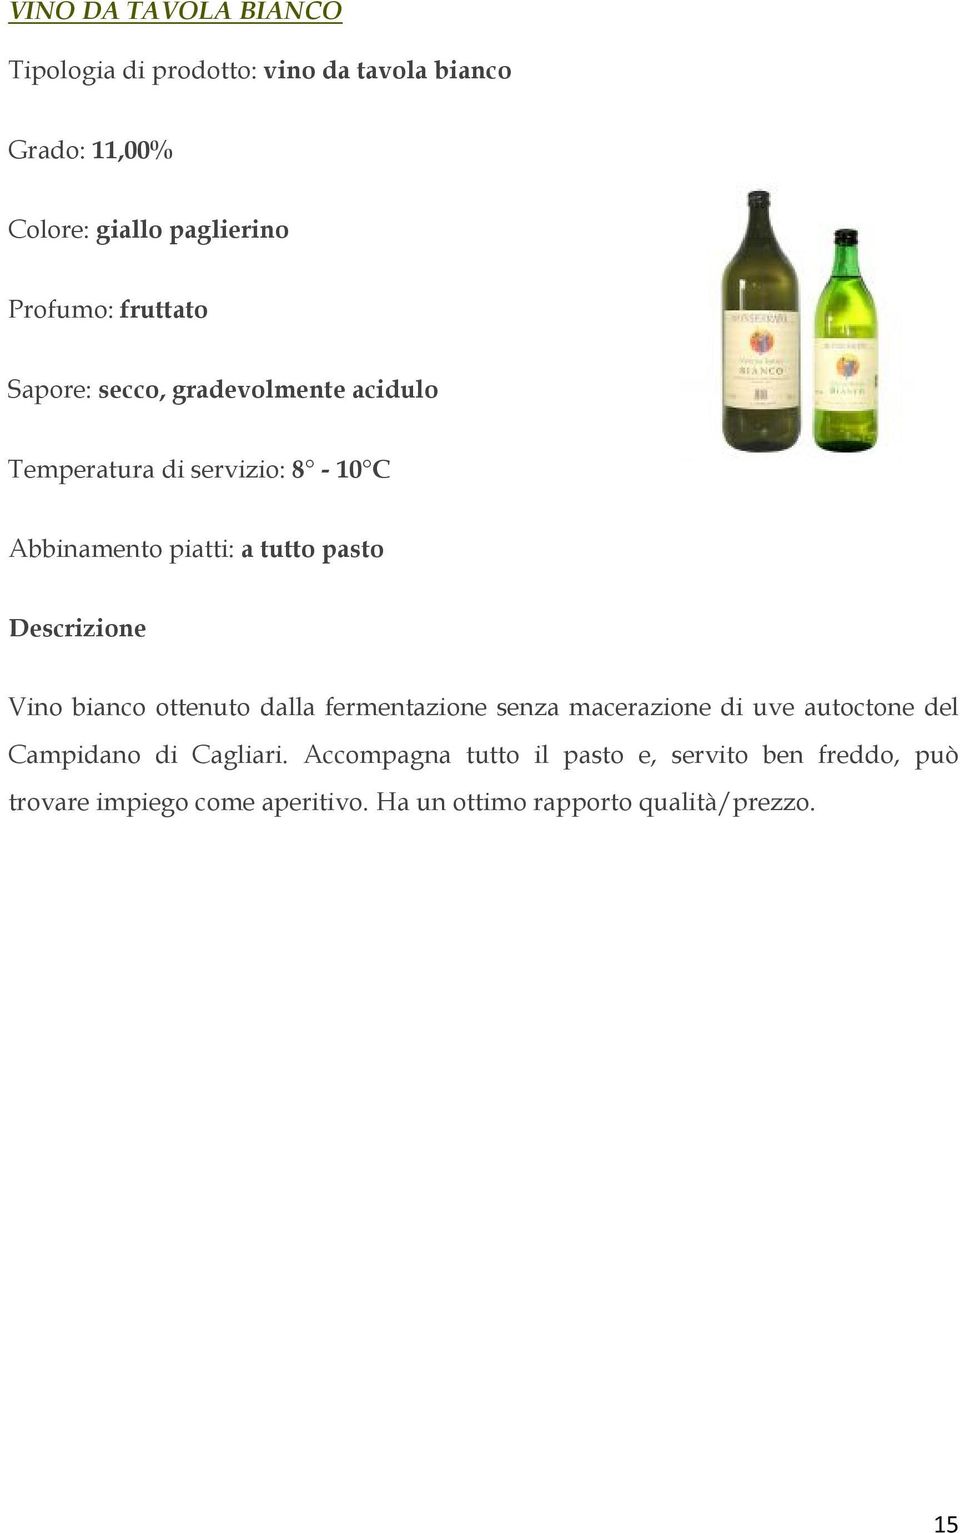 tutto pasto Vino bianco ottenuto dalla fermentazione senza macerazione di uve autoctone del Campidano di Cagliari.